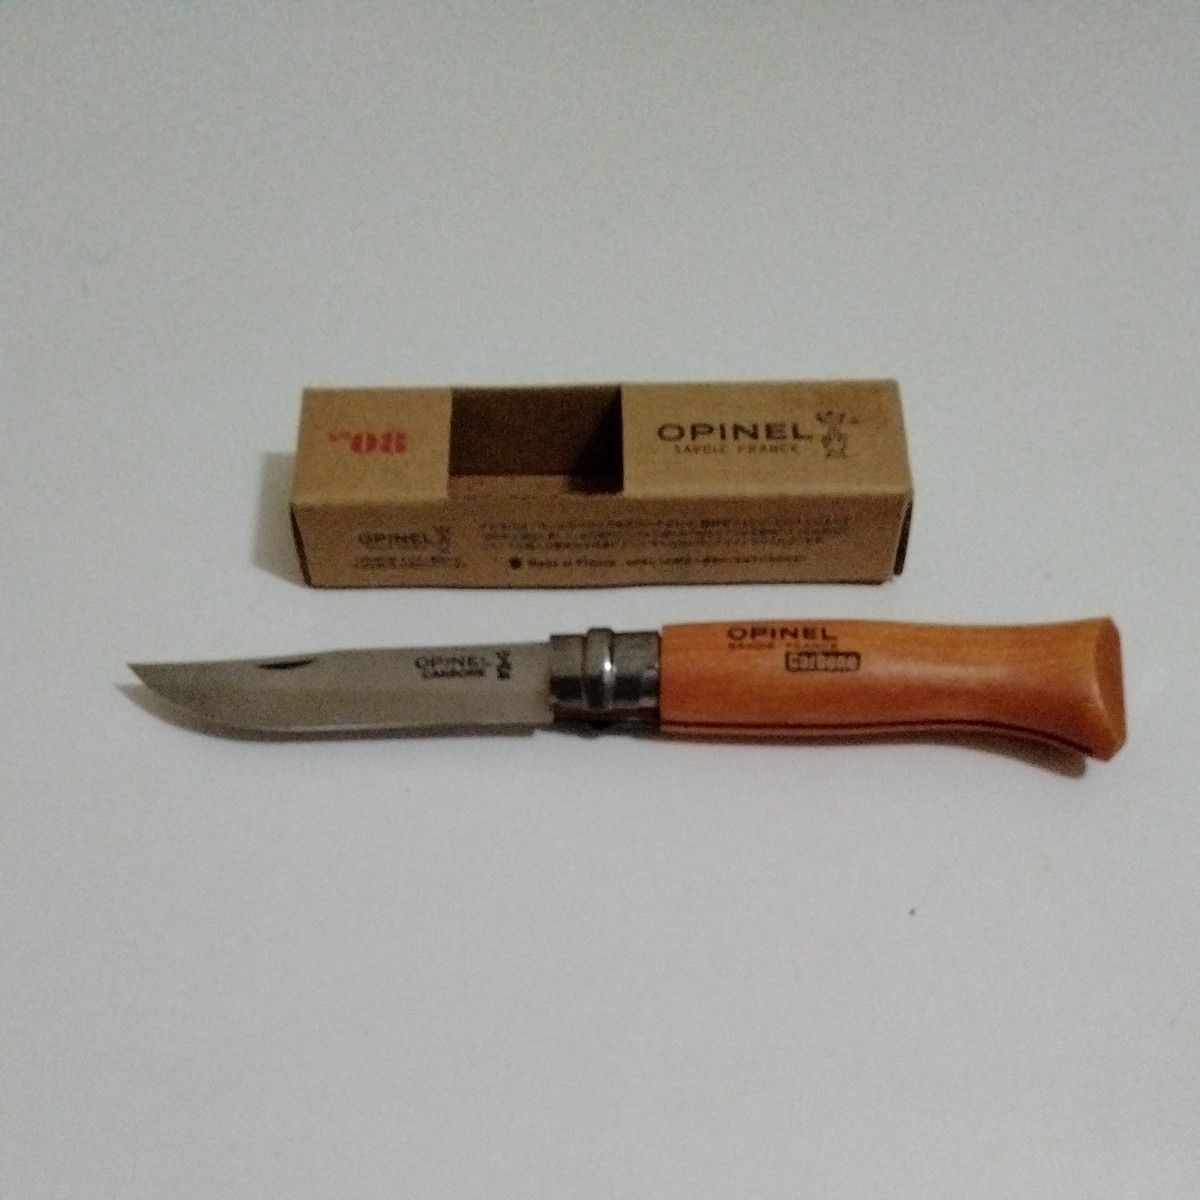  OPINEL ステンレス鋼 折り畳みナイフNo08